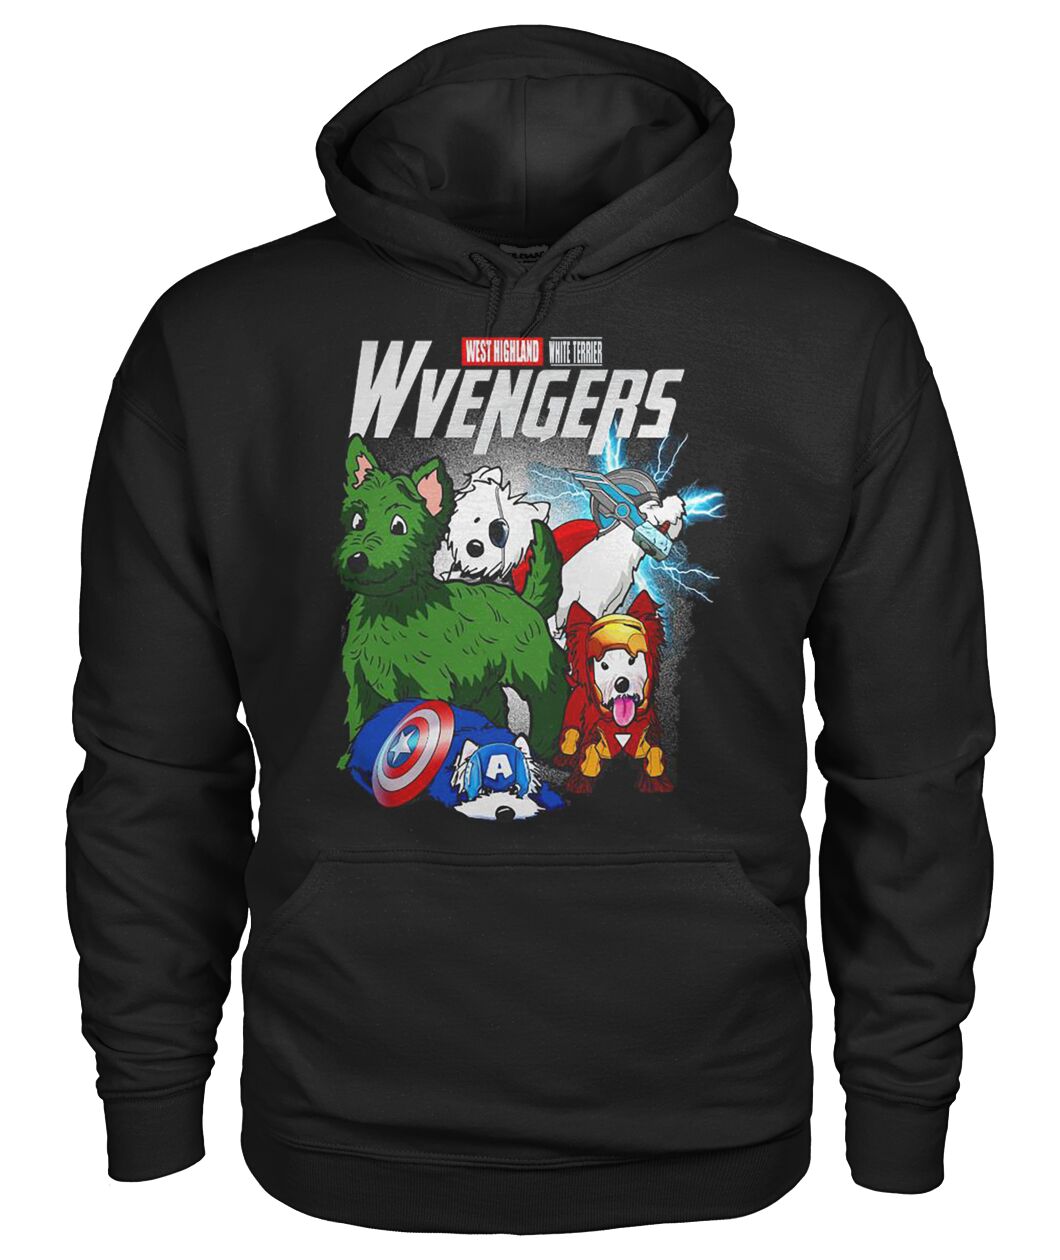 Wetie Terrier Wvengers 3D Hoodie, Shirt 9